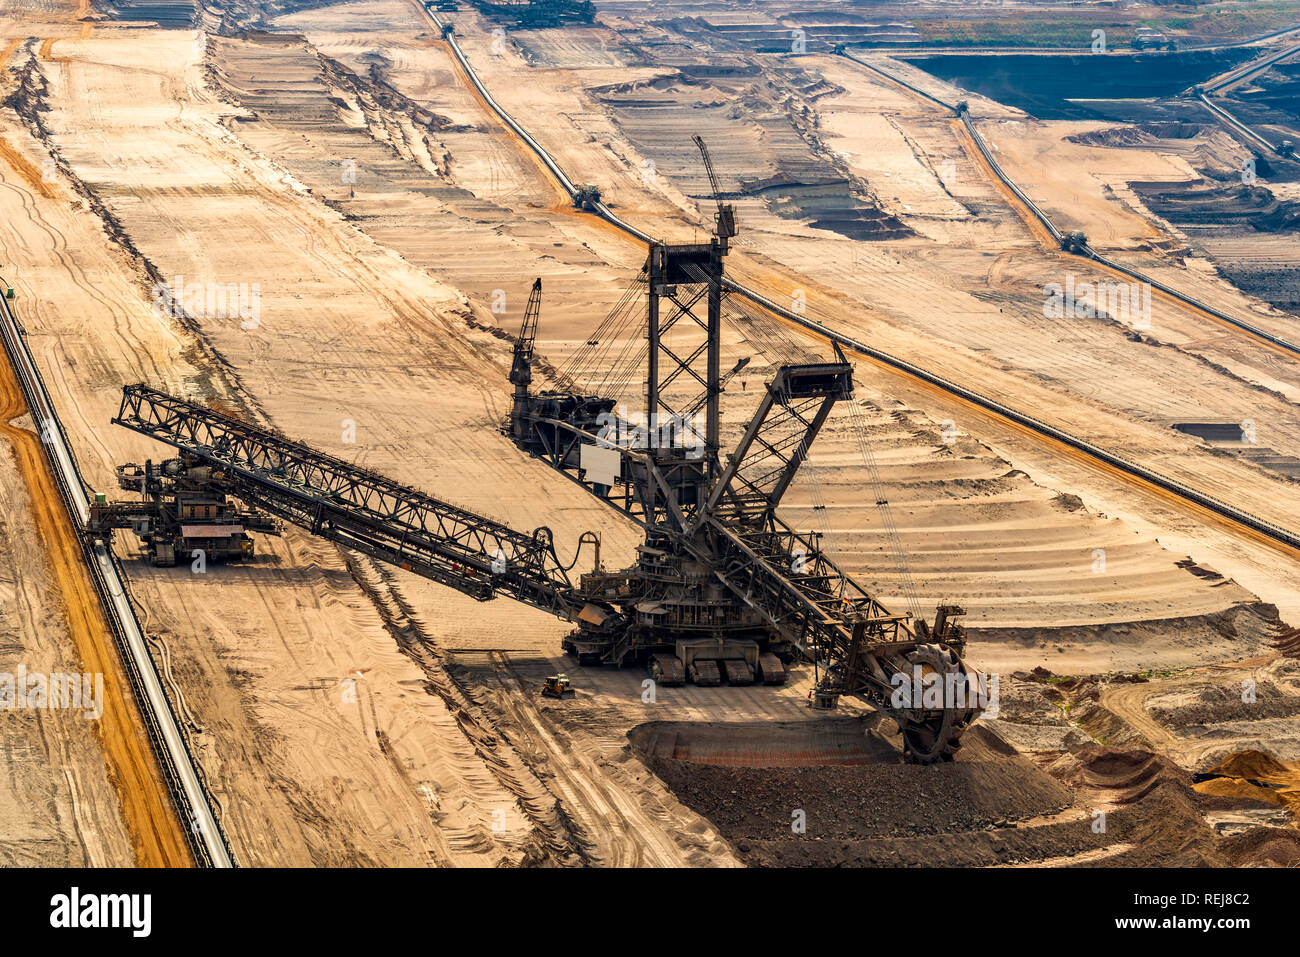 ELSDORF, NRW, Deutschland - 12. AUGUST 2018: Mining Bagger in braunkohlenbergwerk Hambach. Übersicht Abbau fossiler Braunkohle Stockfoto